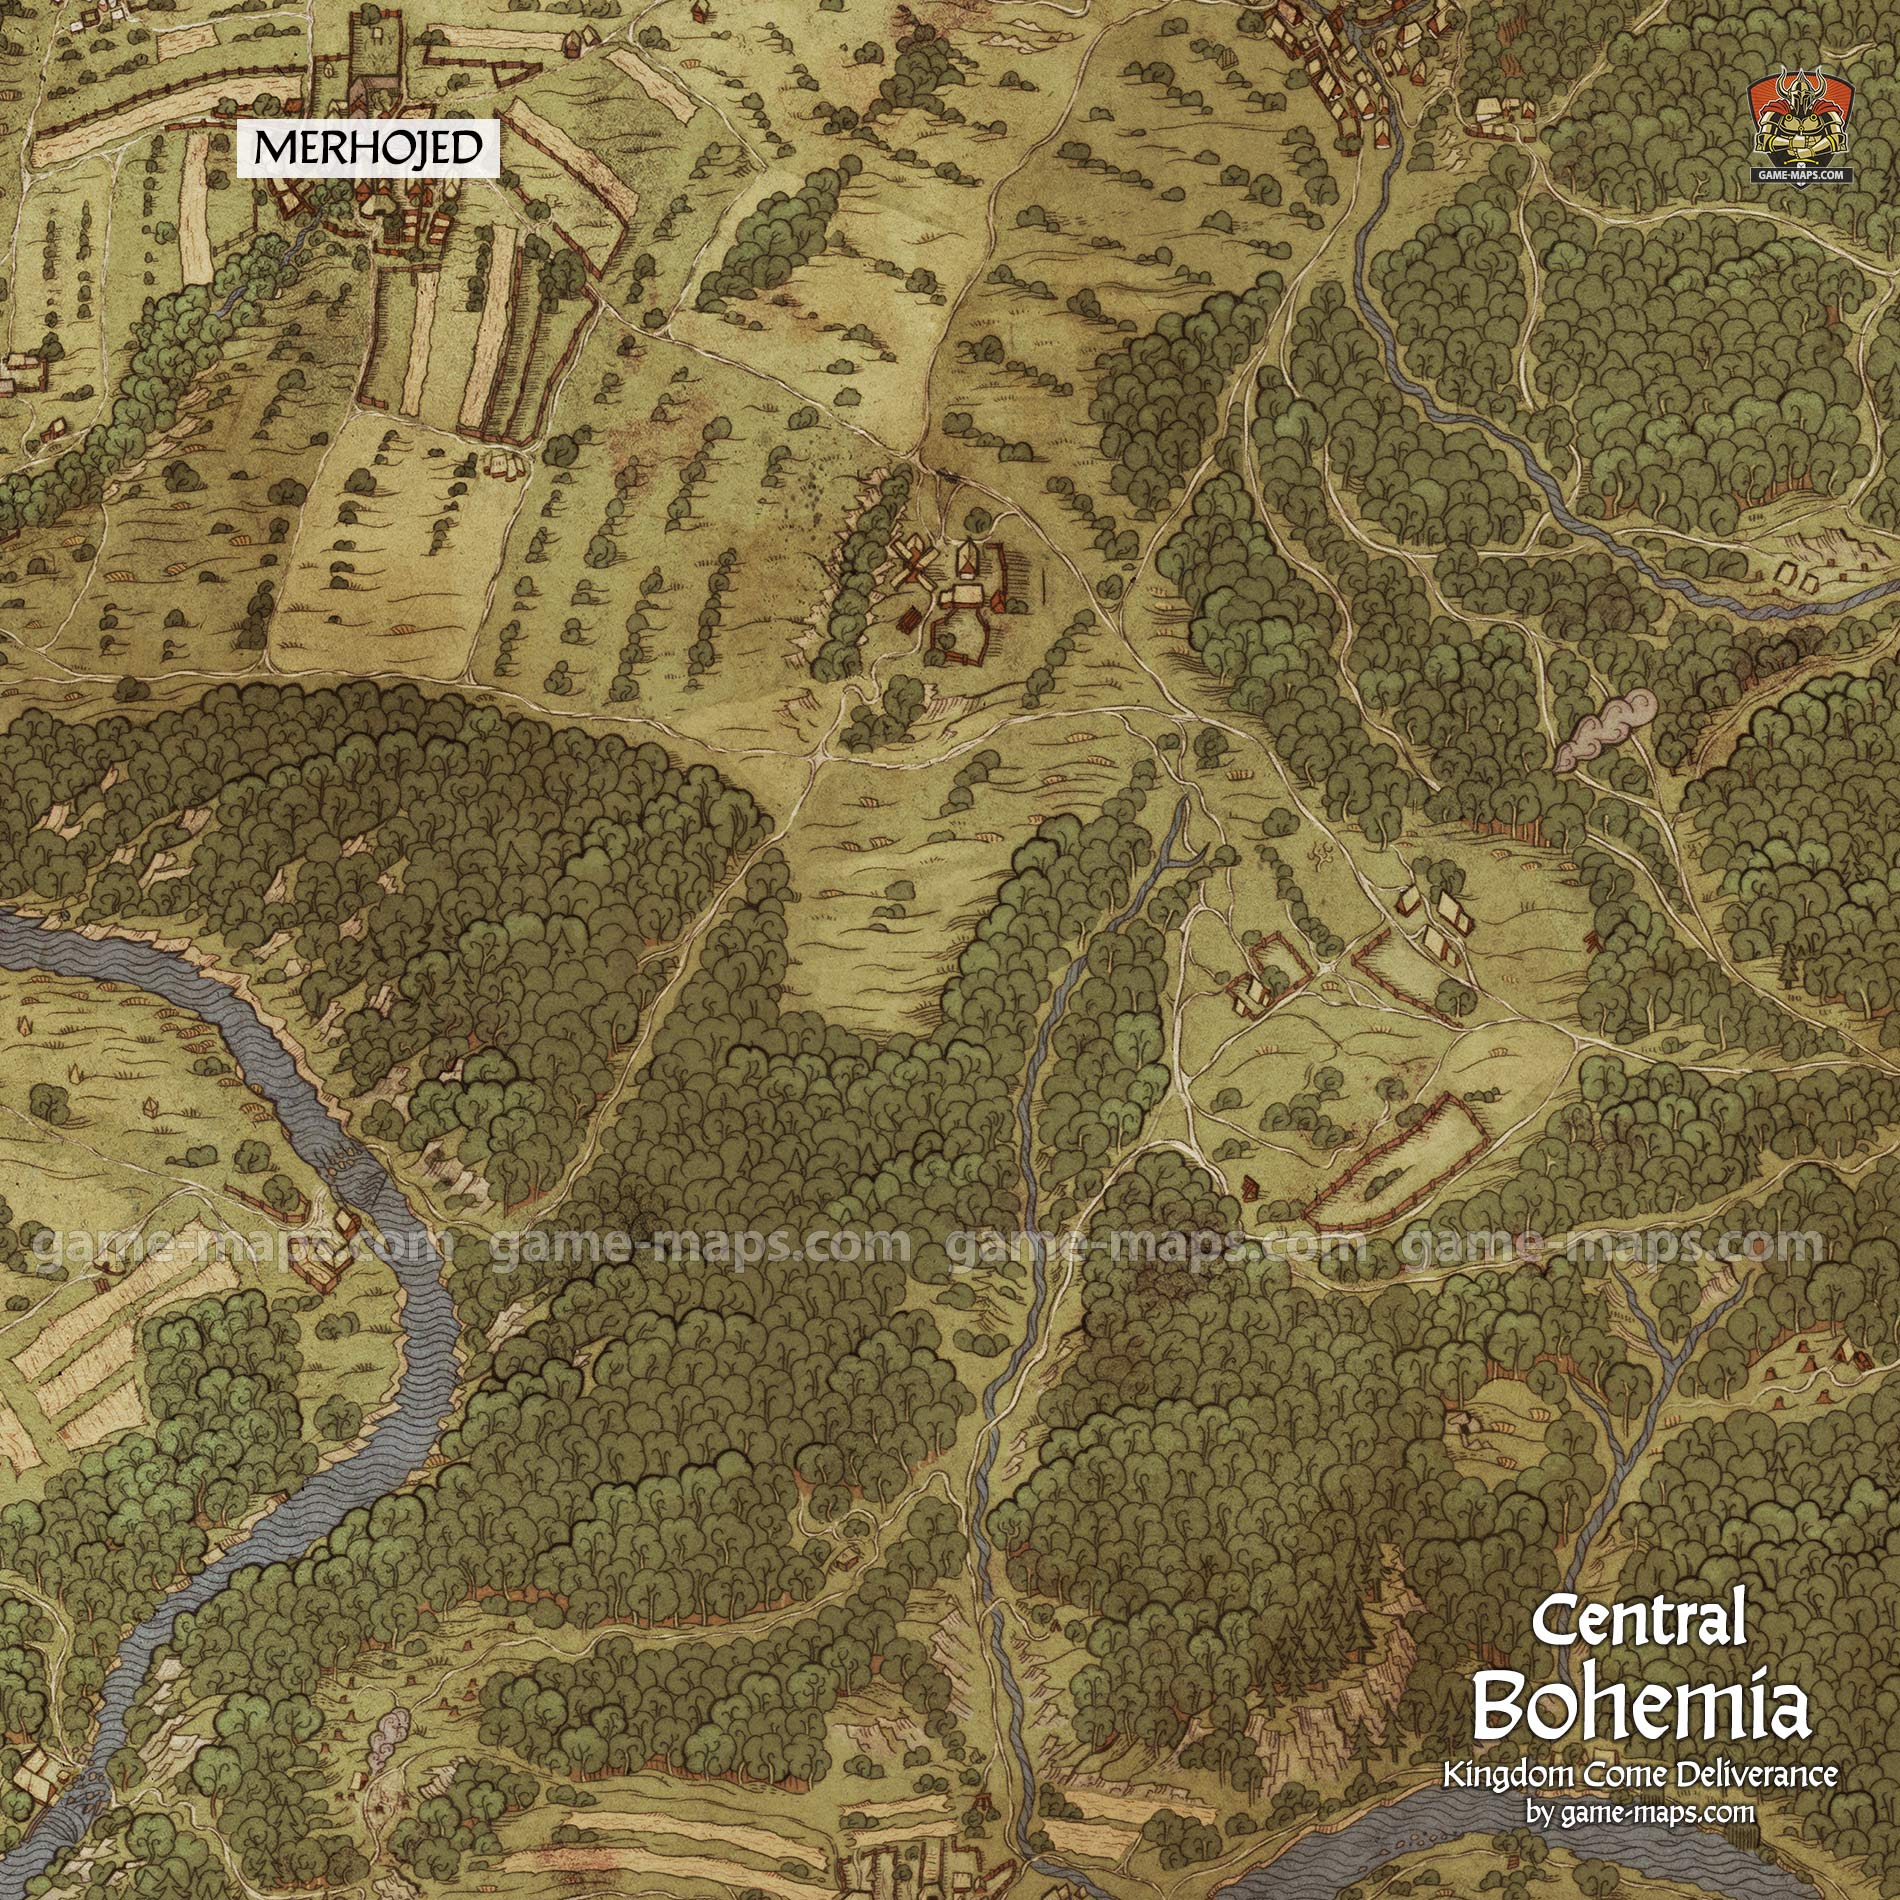 Central Bohemia Map for Kingdom Come Deliverance